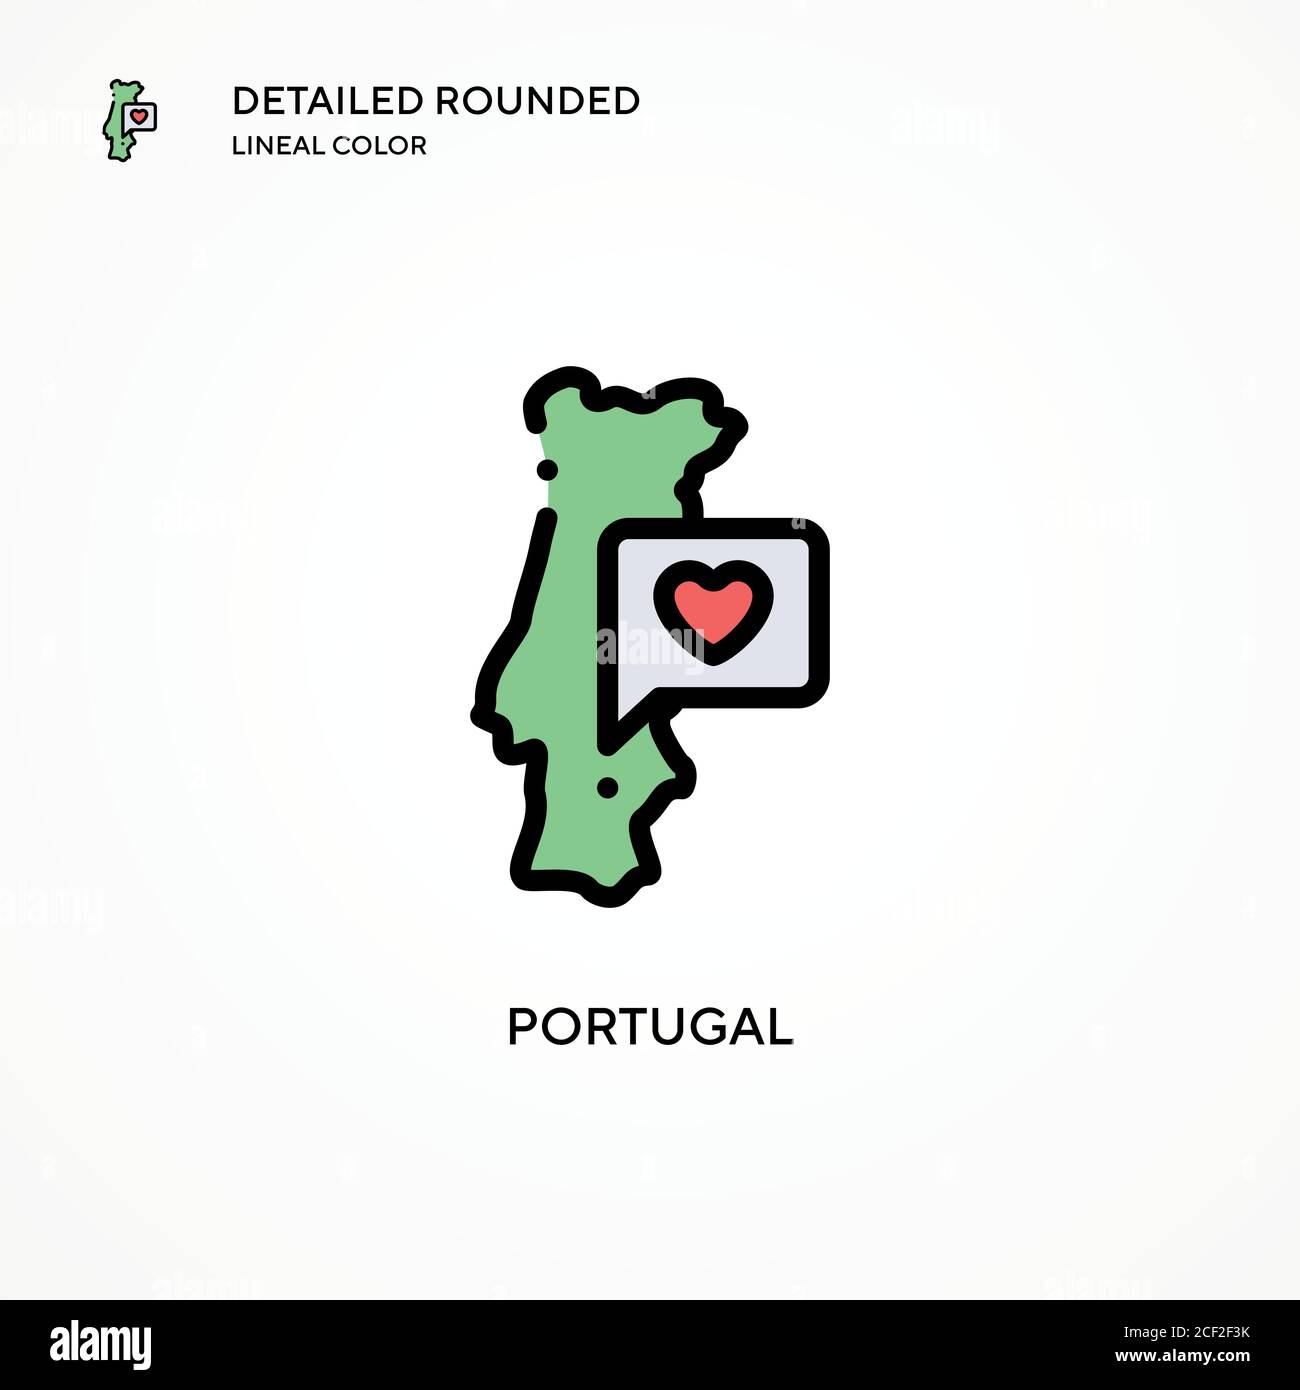 Vektorsymbol Portugal. Moderne Vektorgrafik Konzepte. Einfach zu bearbeiten und anzupassen. Stock Vektor